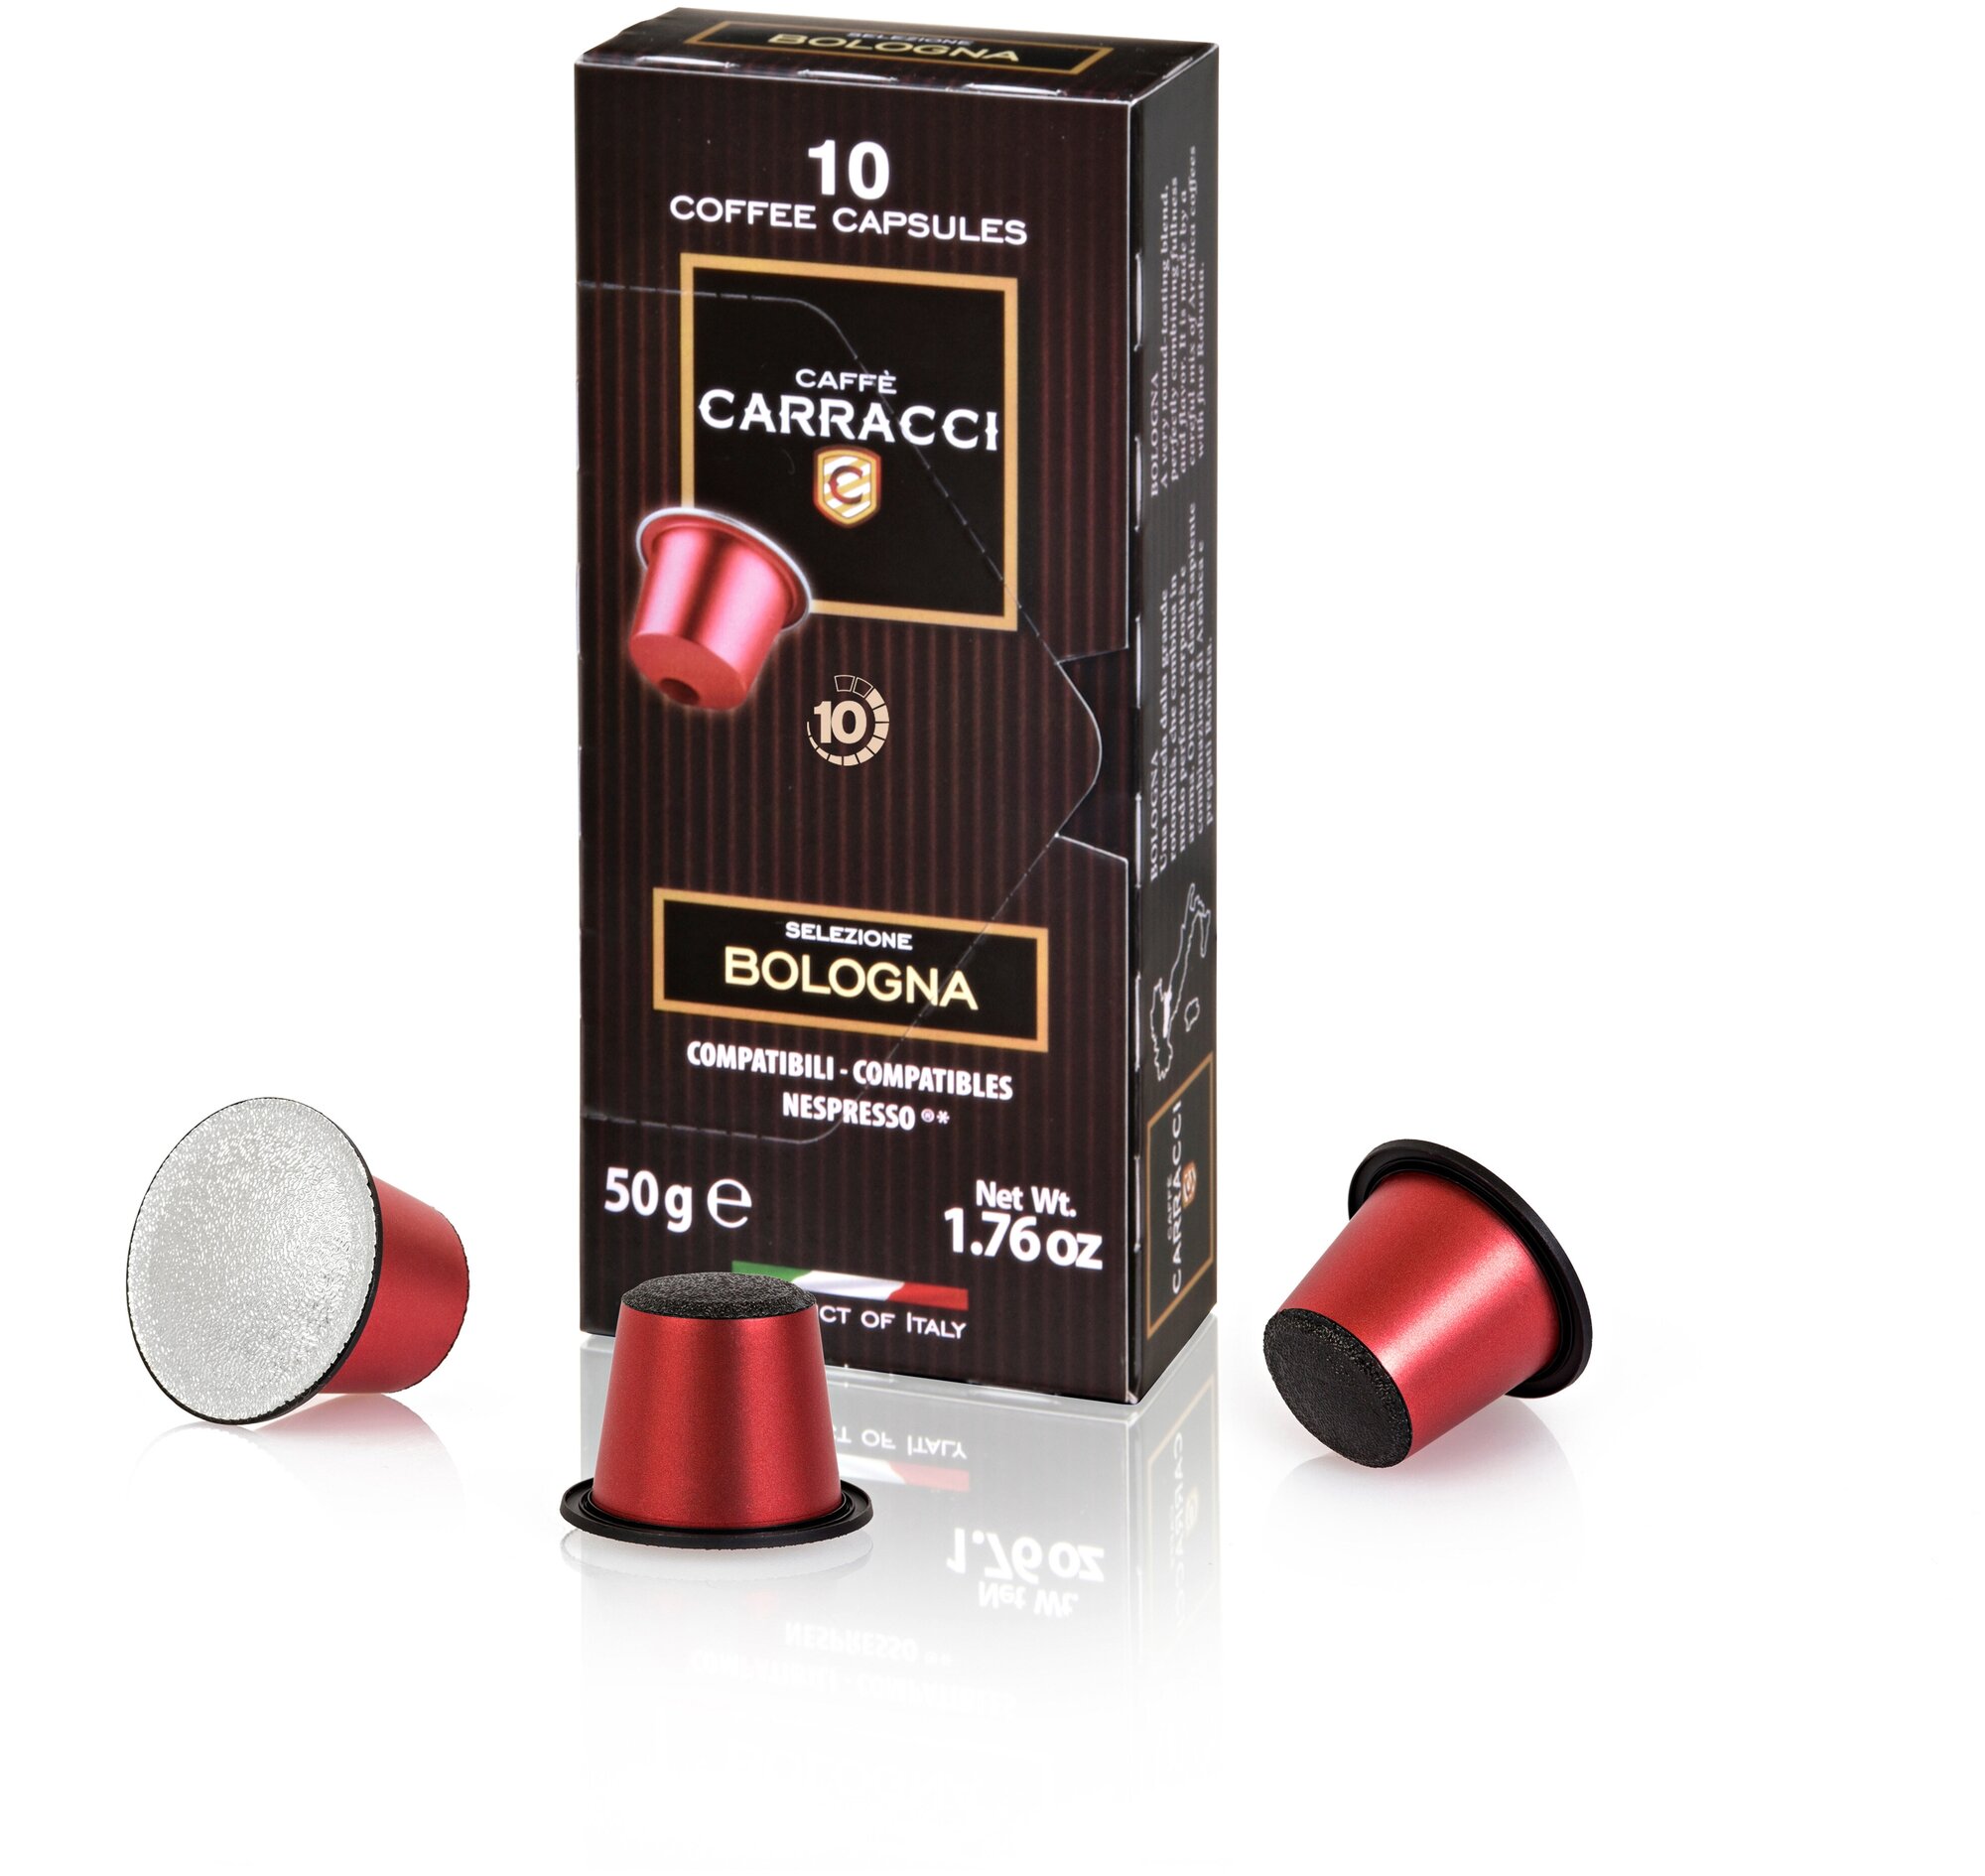 Кофе в капсулах "Carracci" Nespresso Болонья 50 грамм, 10 капсул